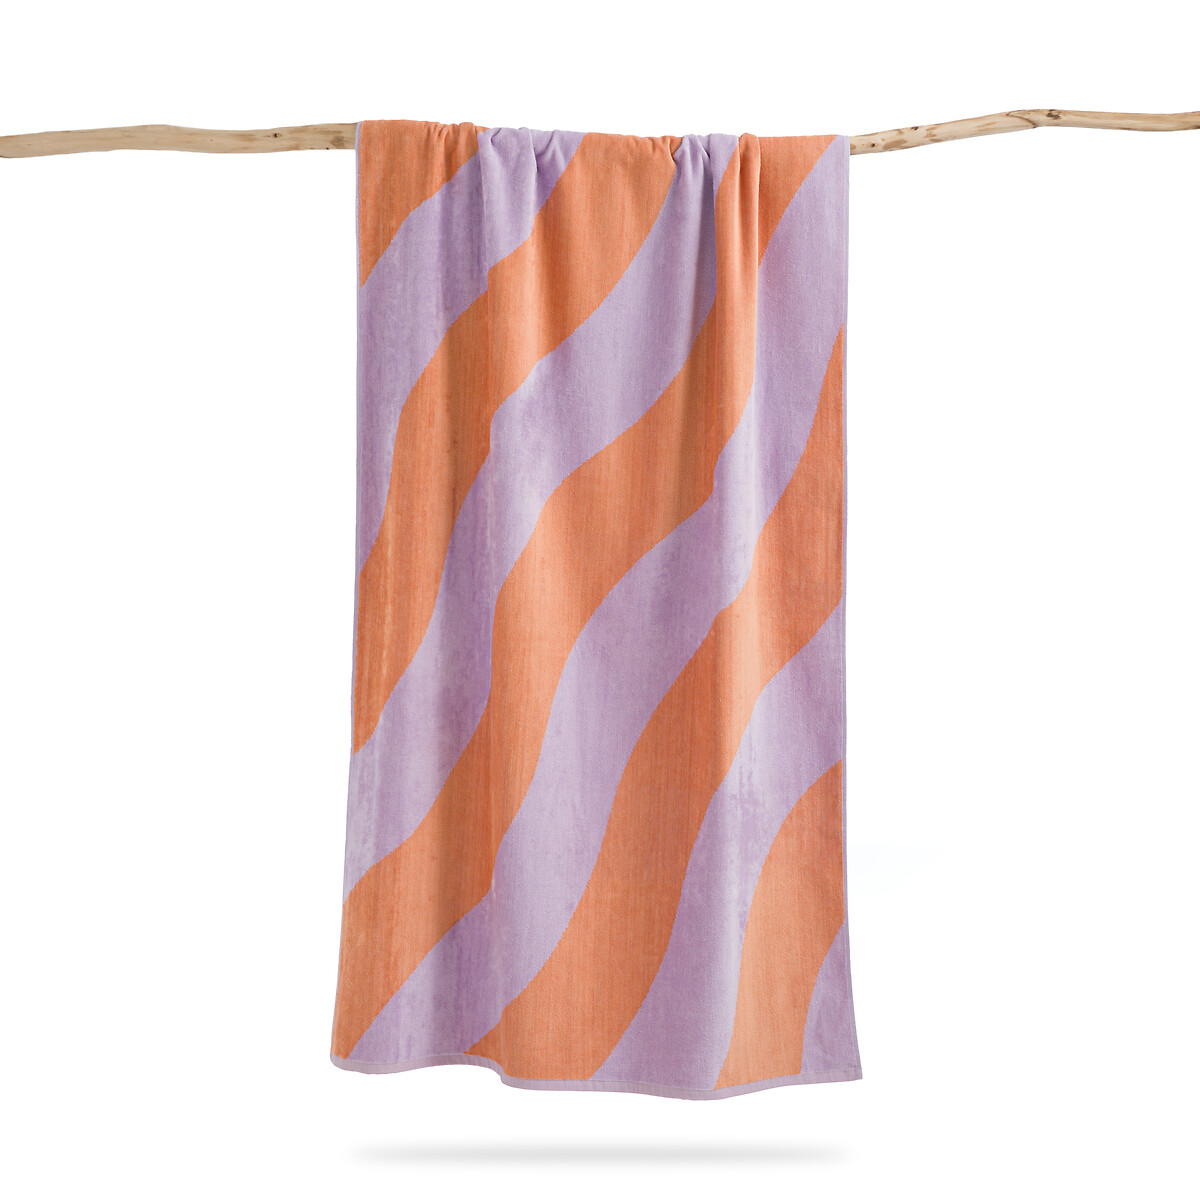 Πετσέτα παραλίας από πετσετέ βελουτέ ύφασμα 90x175 cm